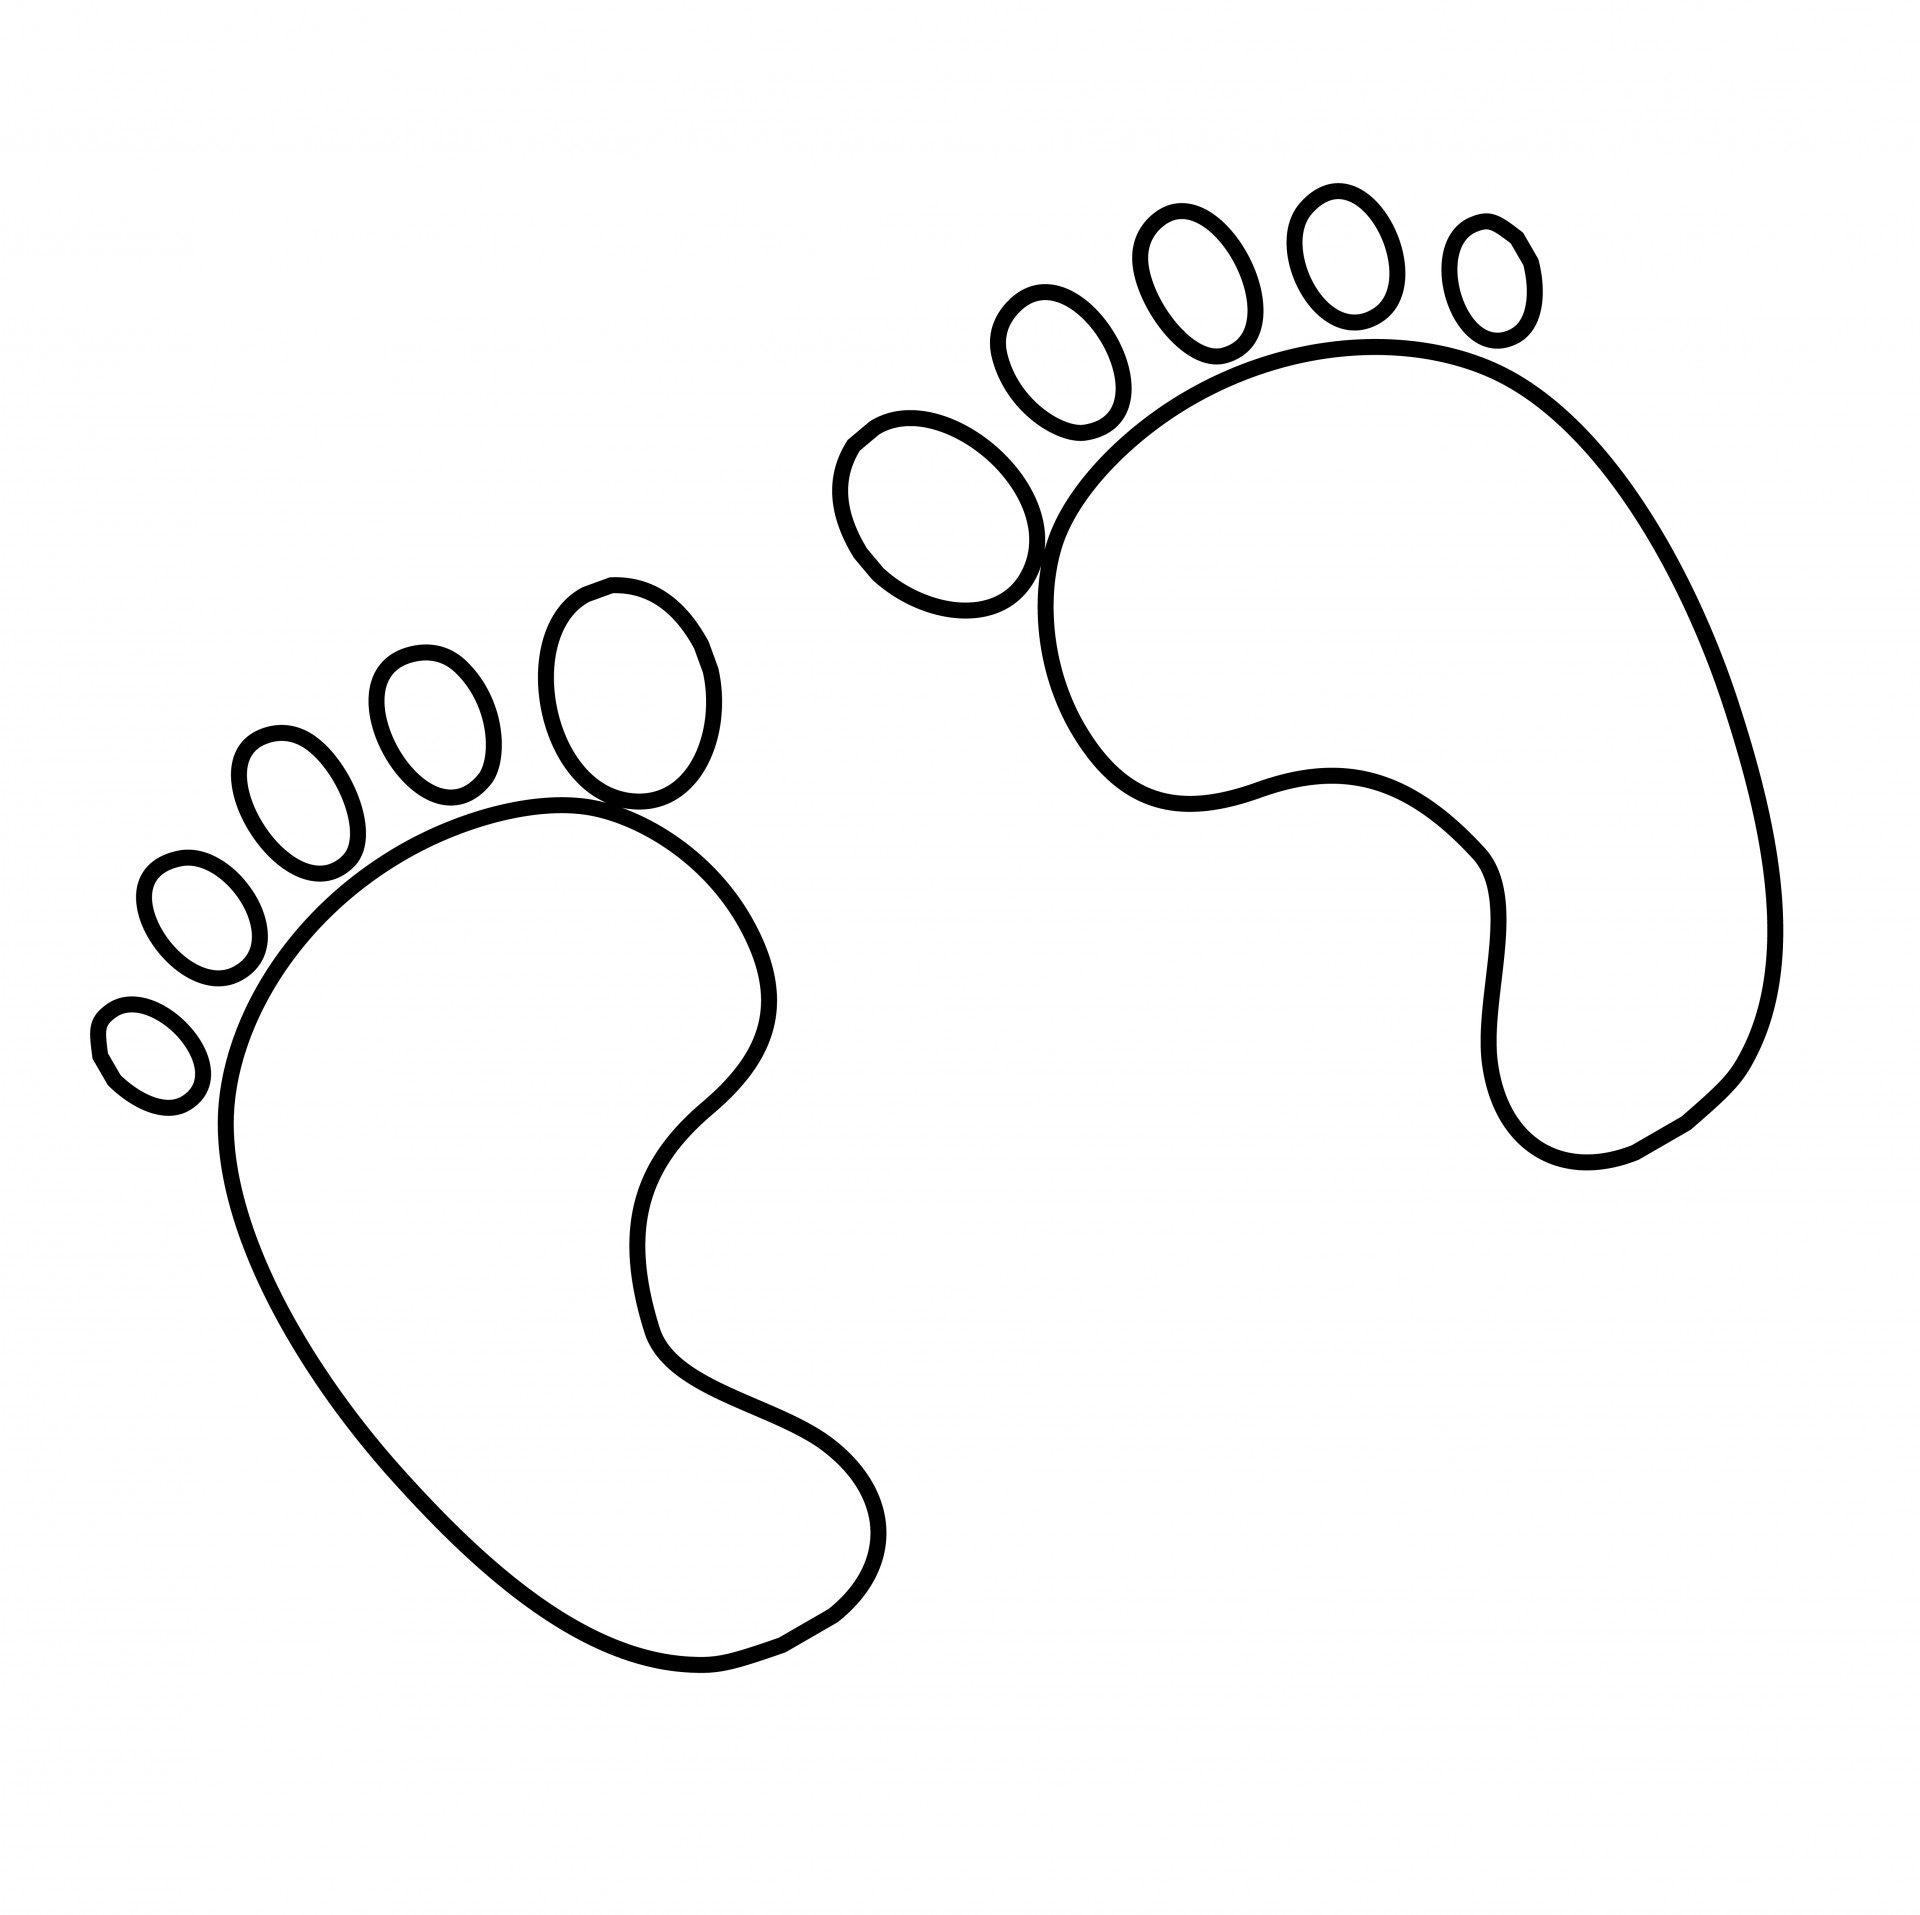 板绘入门教程脚的画法，教你如何画出好看的脚！还有一波脚的素材哟 - 知乎